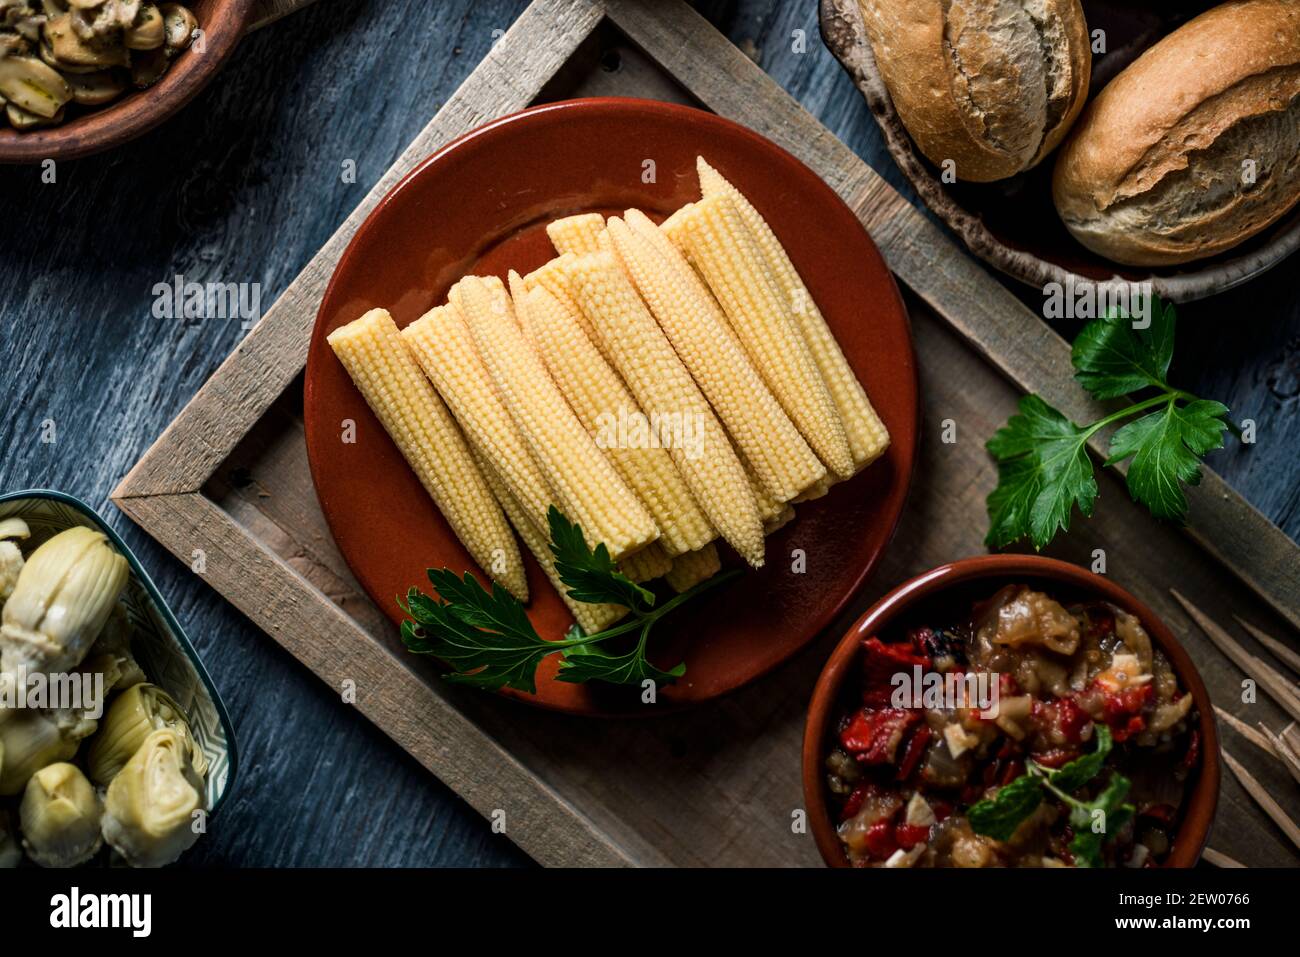 vue en grand angle d'une assiette avec un peu de maïs sucré sur une table à côté d'un bol avec un peu d'escalivada espagnol, fait avec différents légumes rôtis, un Banque D'Images